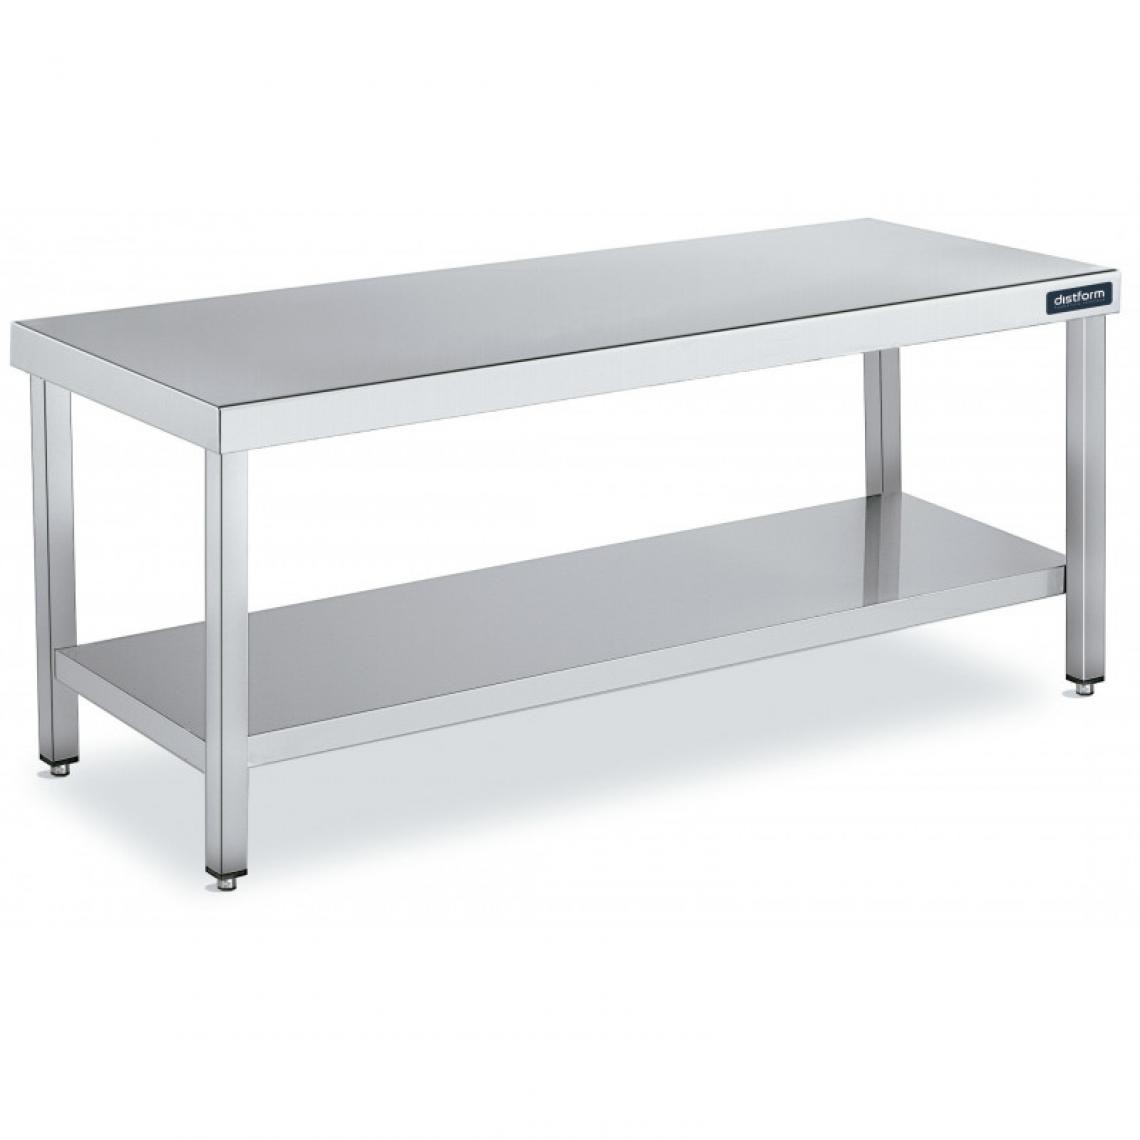 DISTFORM - Table de Travail Centrale Inox avec 1 Étagère - Gamme 600 - Hauteur 600 - Distform - Acier inoxydable800x600 - Tables à manger